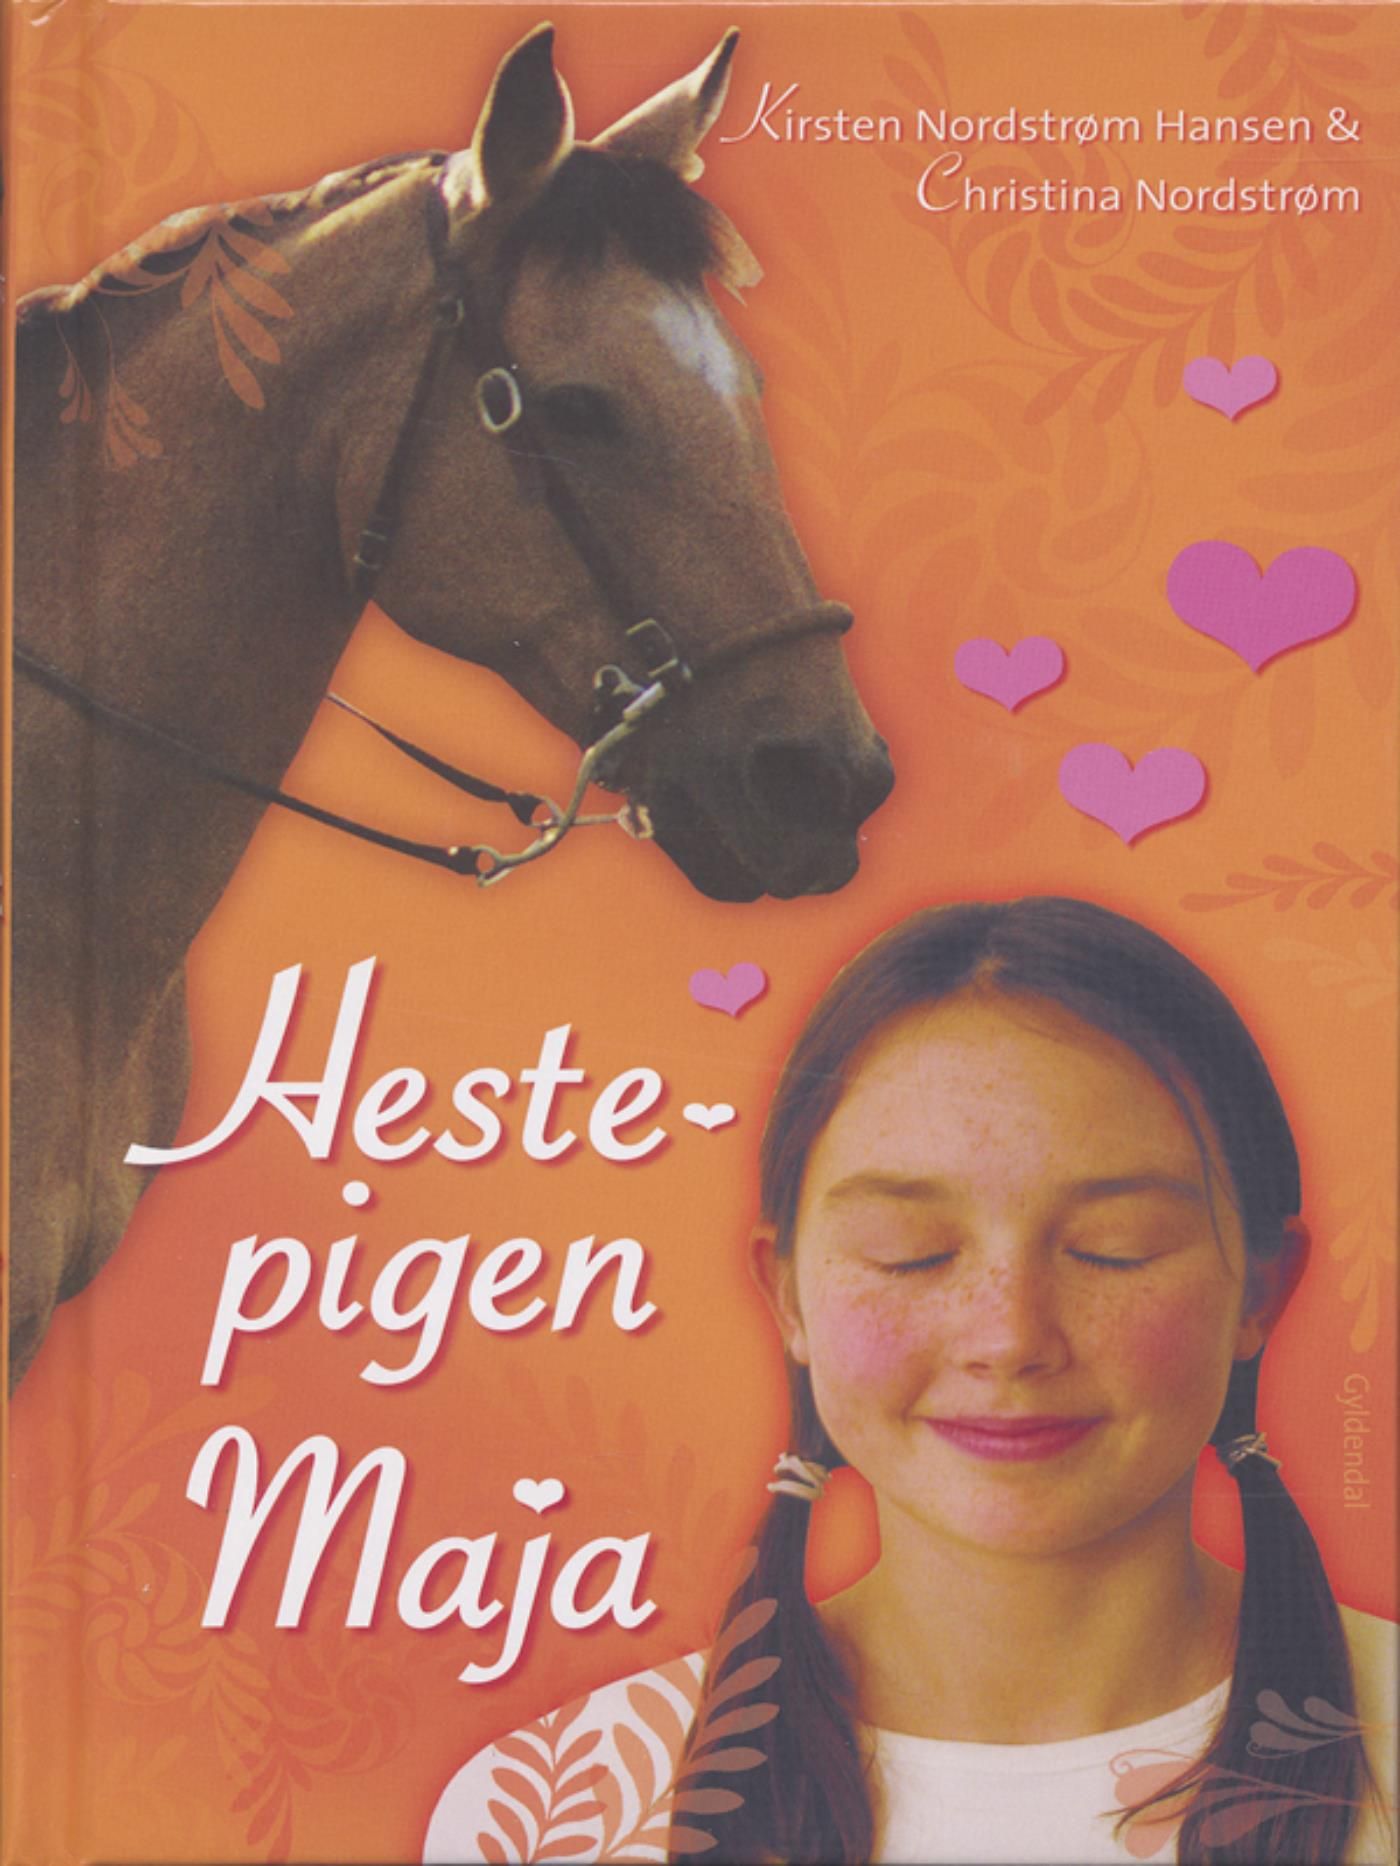 Hestepigen Maja, audiobook by Kirsten Nordstrøm Hansen, Christina Nordstrøm